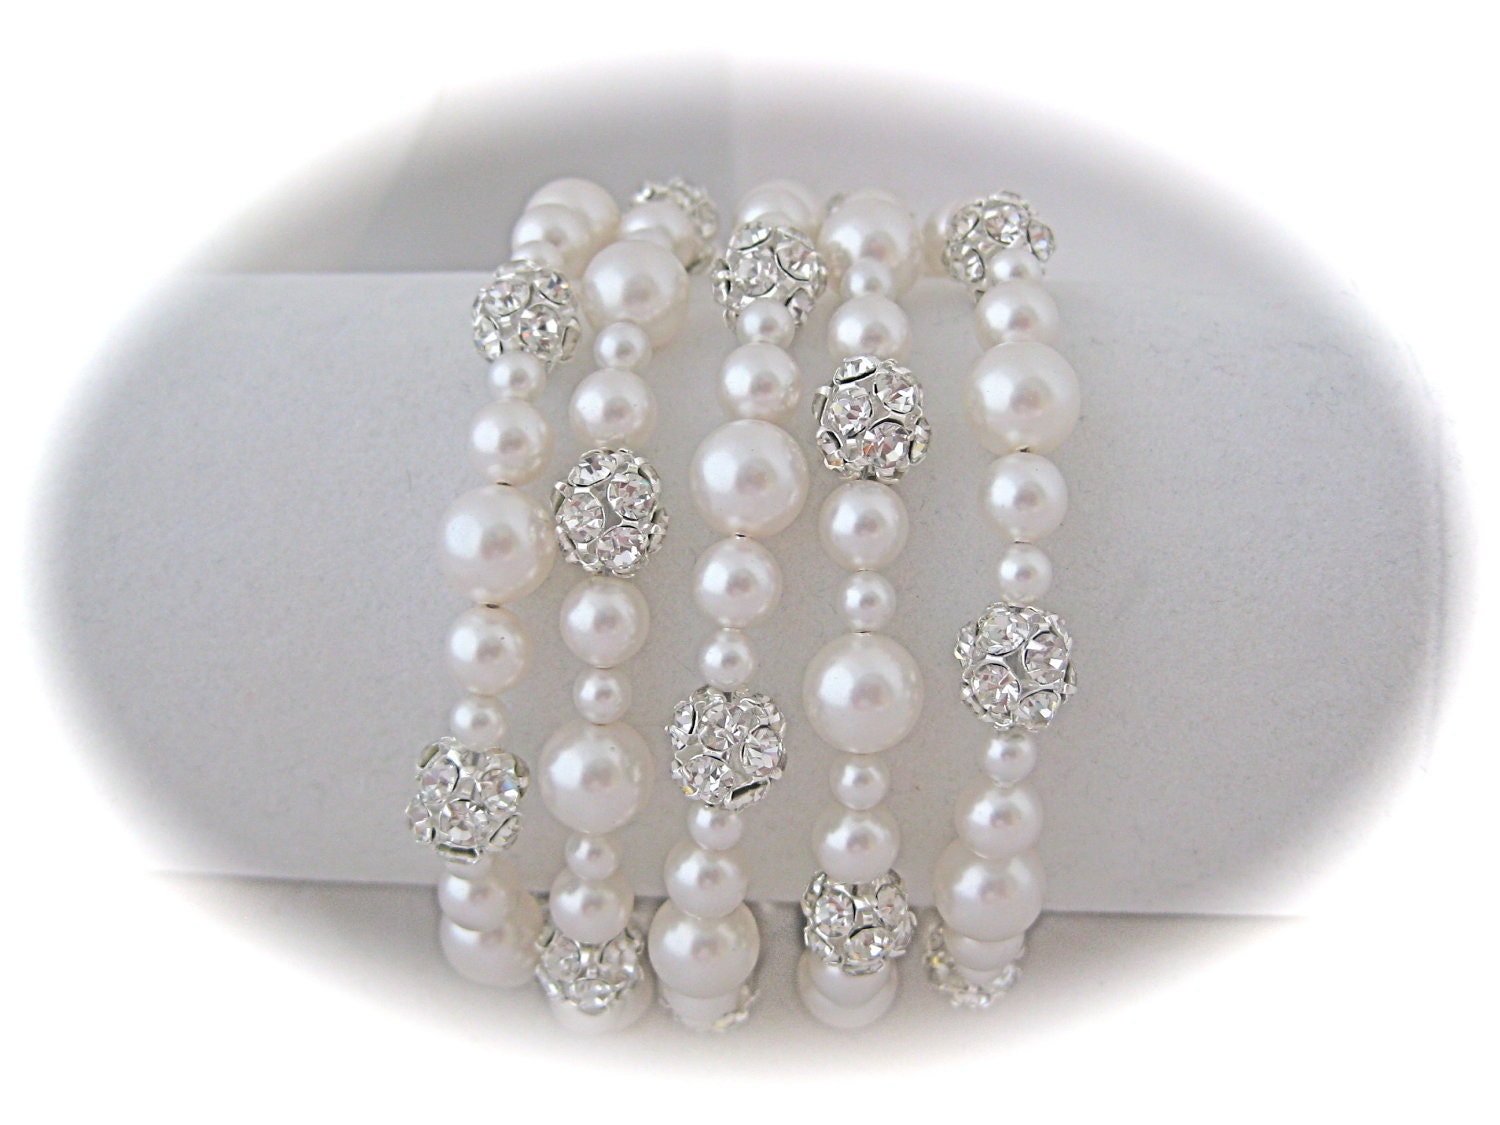 Bridal bracelet, pearl bracelet, cuff bracelet, wedding jewelry with Swarovski Pearls and Rhinestone crystals